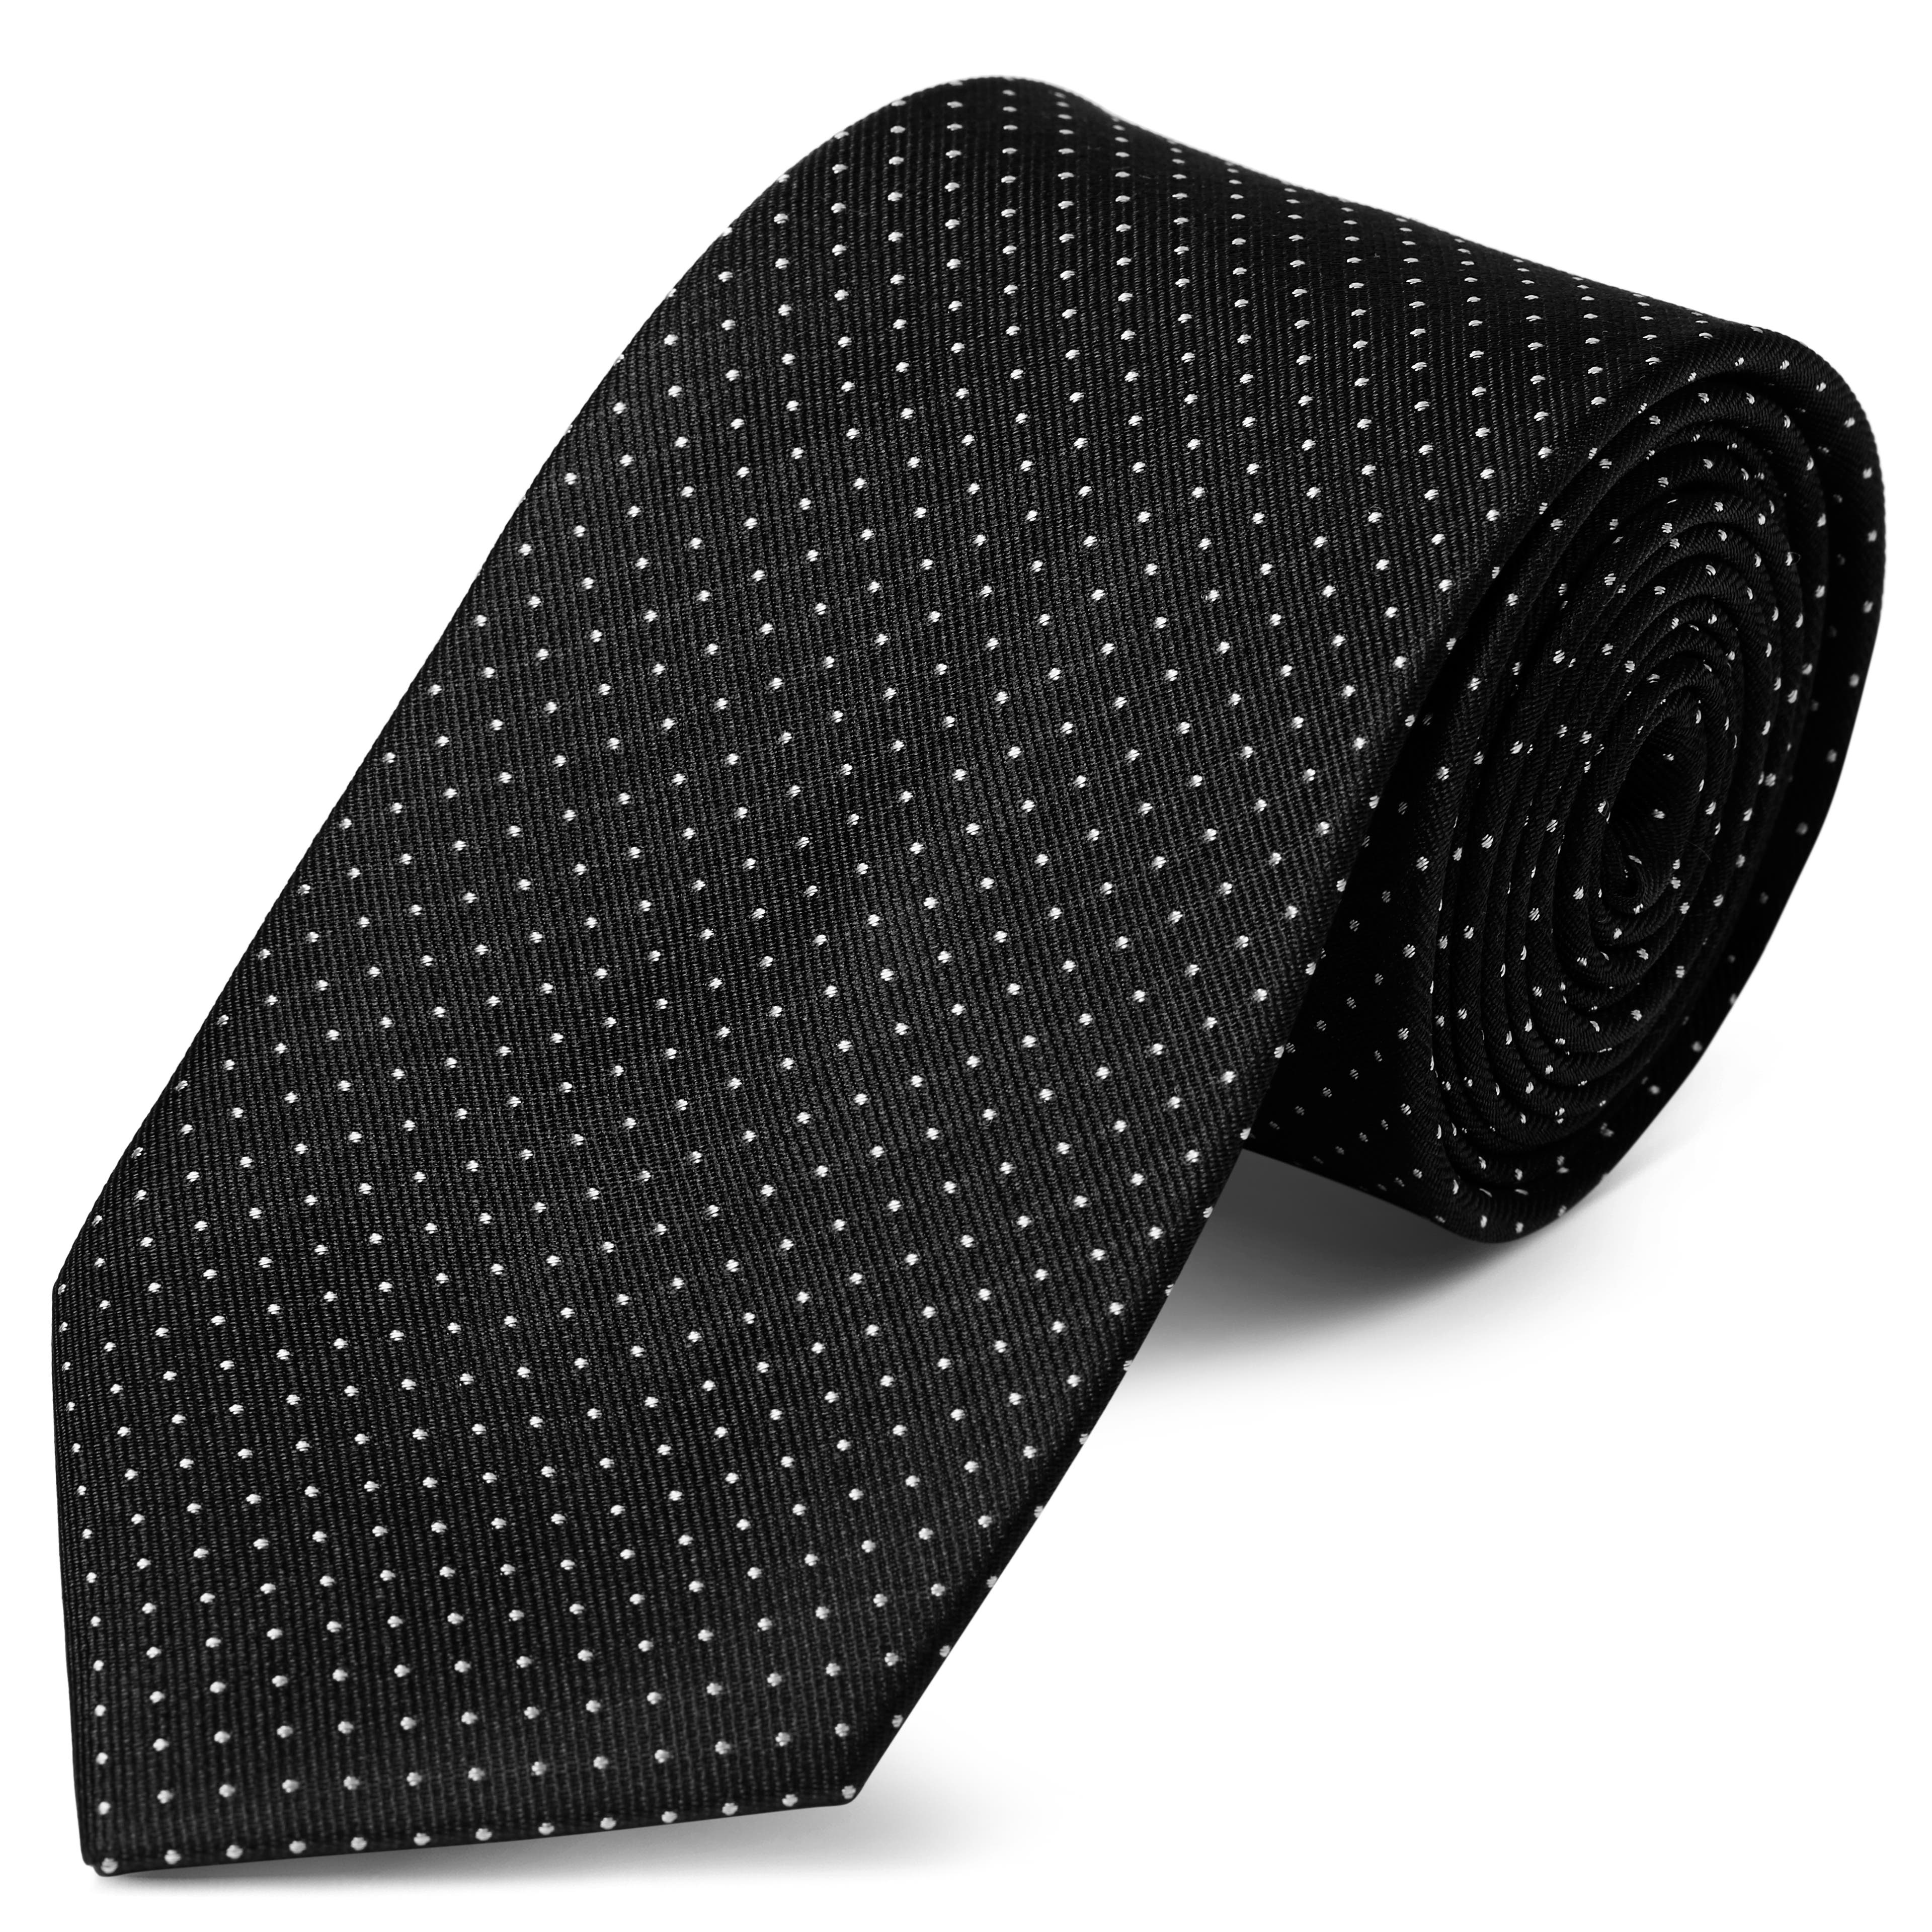 Fekete selyem nyakkendő fehér pöttyös mintával - 8 cm